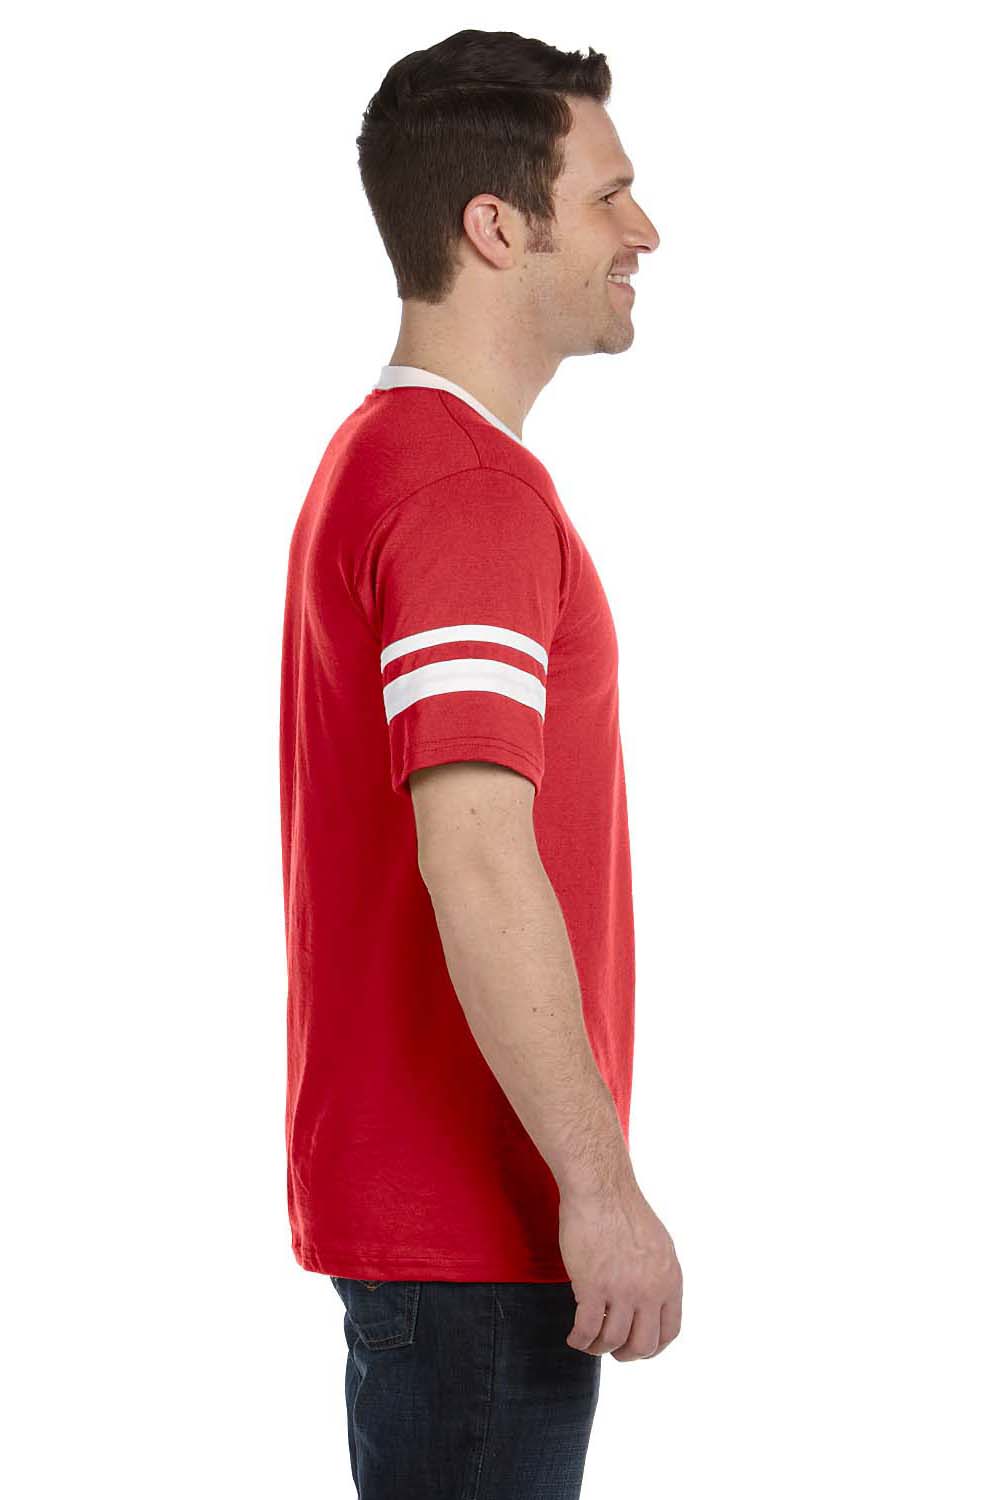 Augusta Sportswear 360 Mens Short Sleeve V-Neck T-Shirt Red/White Model Side